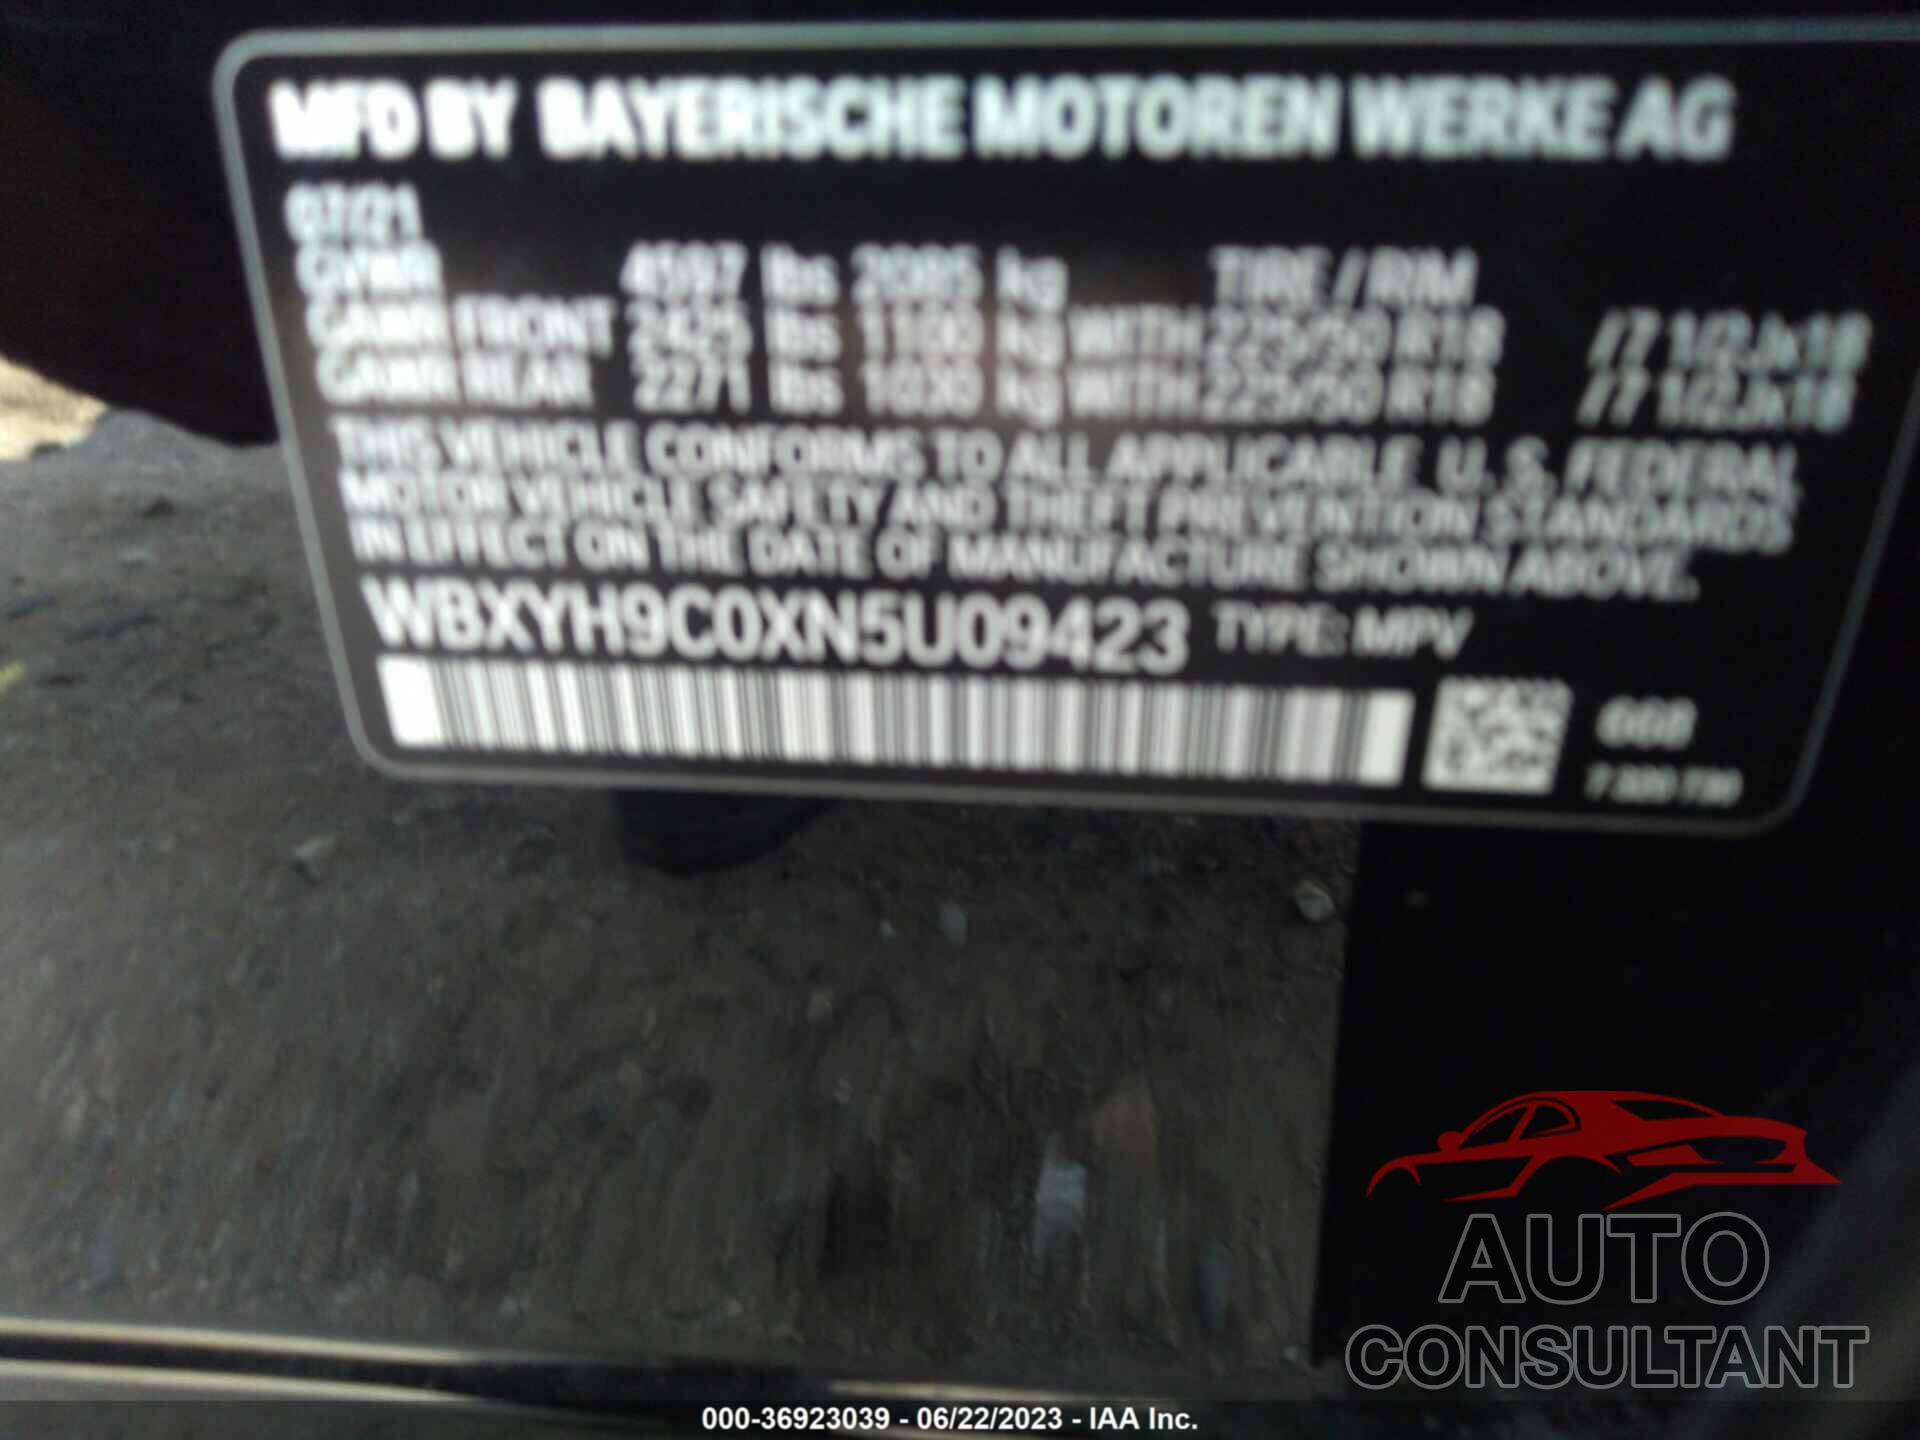 BMW X2 2022 - WBXYH9C0XN5U09423